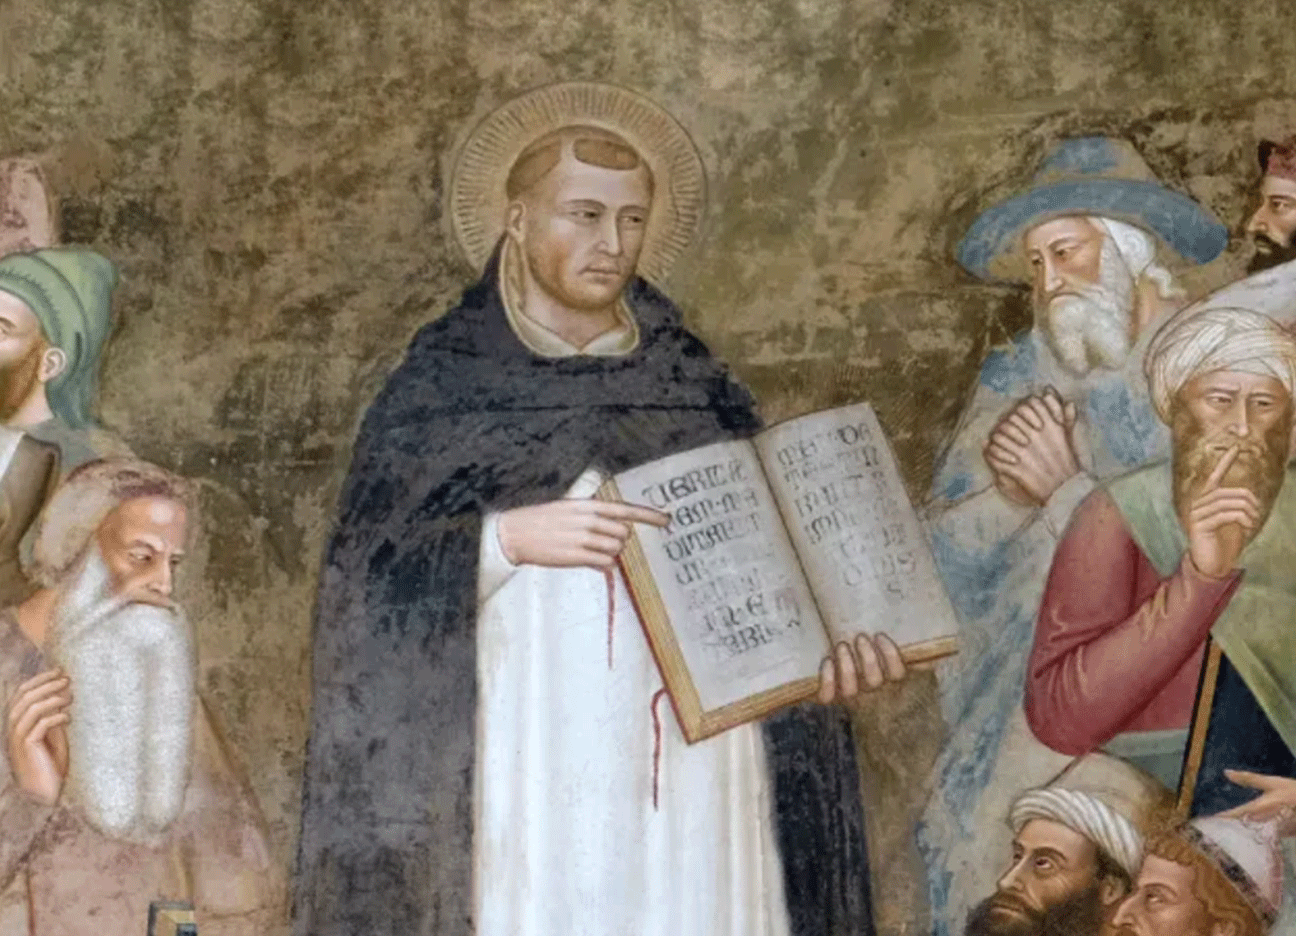 Di sản của Thánh Tôma Aquino 750 năm sau khi qua đời